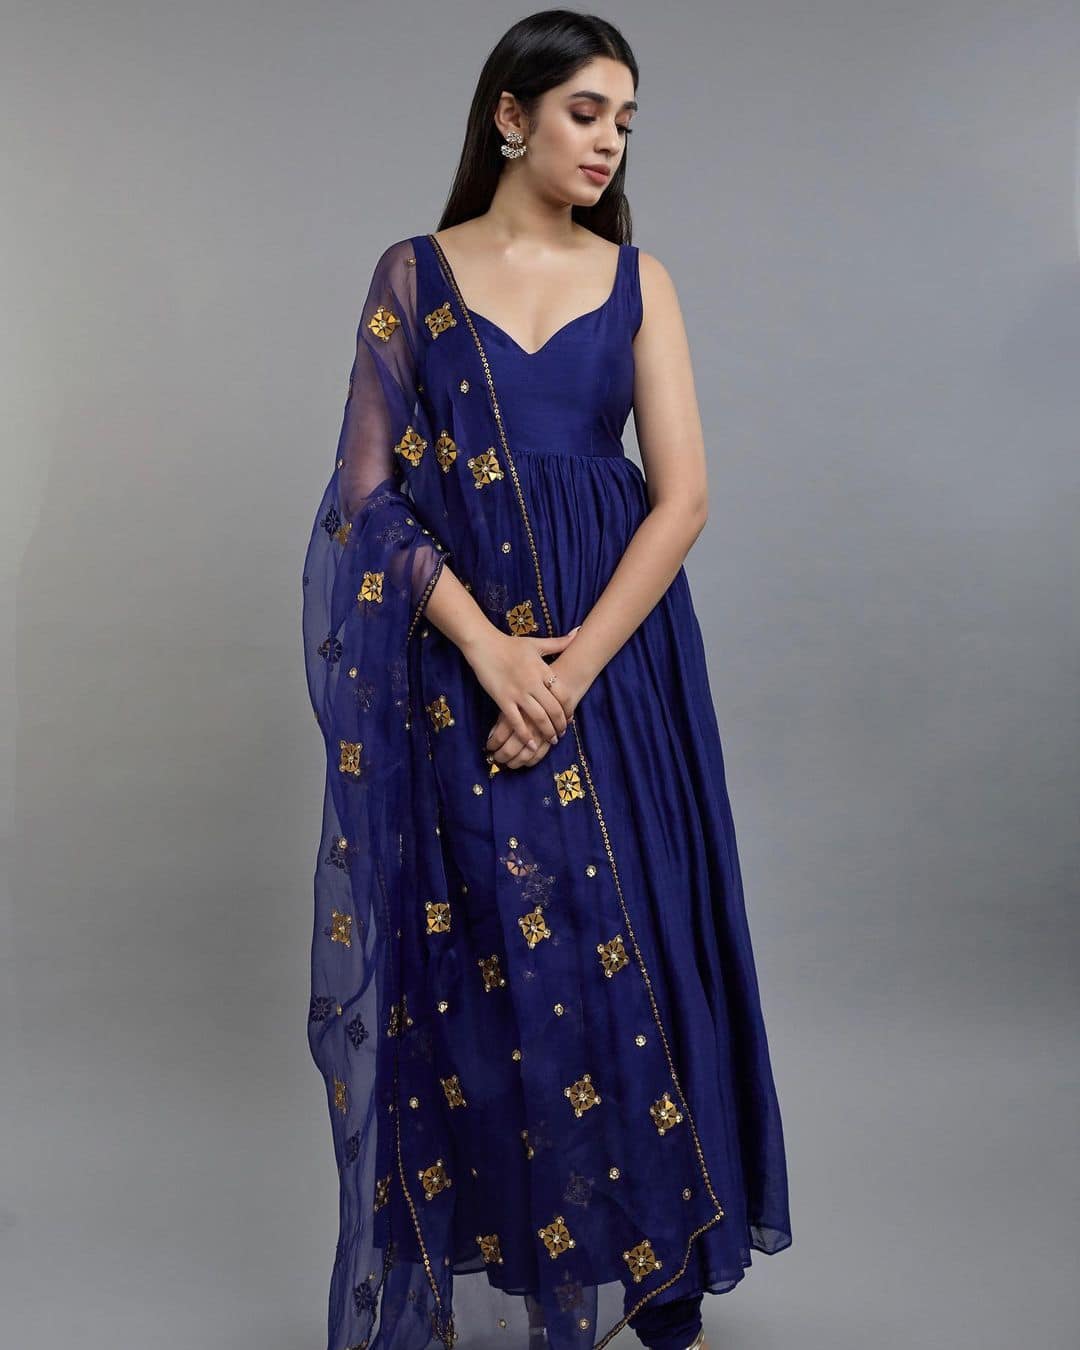 Krithi Shetty Elegant in Blue Chic